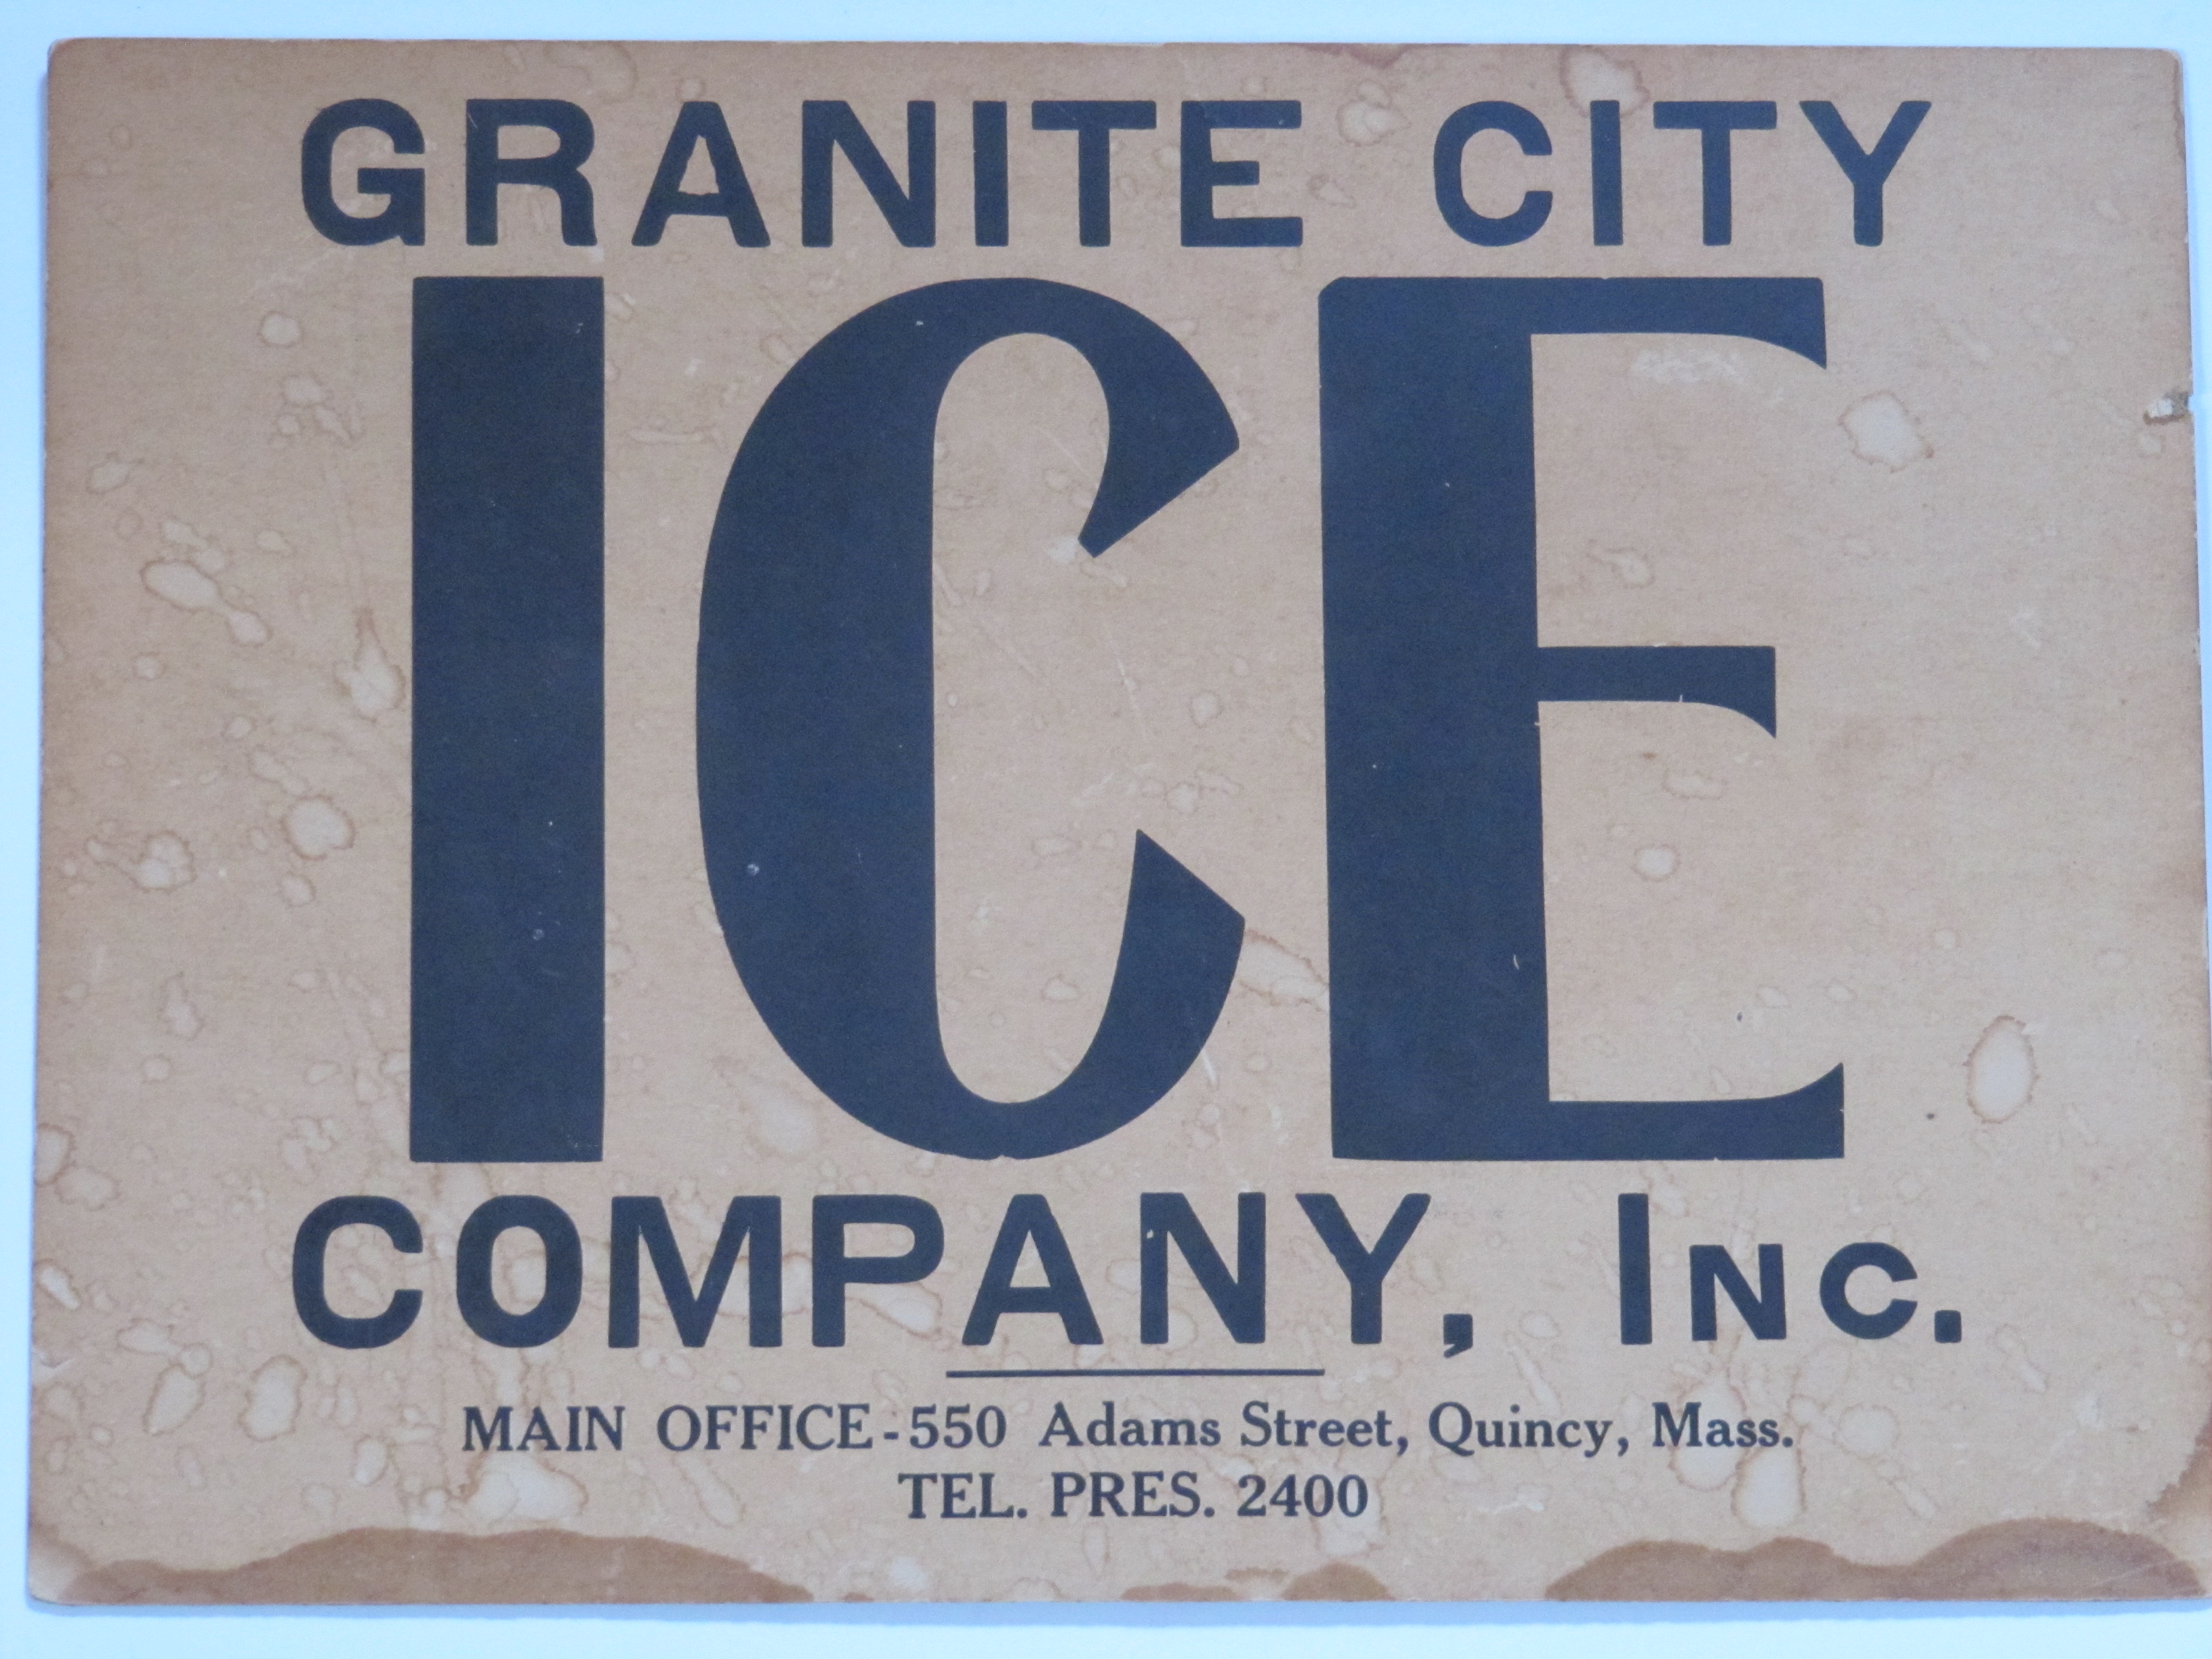 Granite City Ice Co.